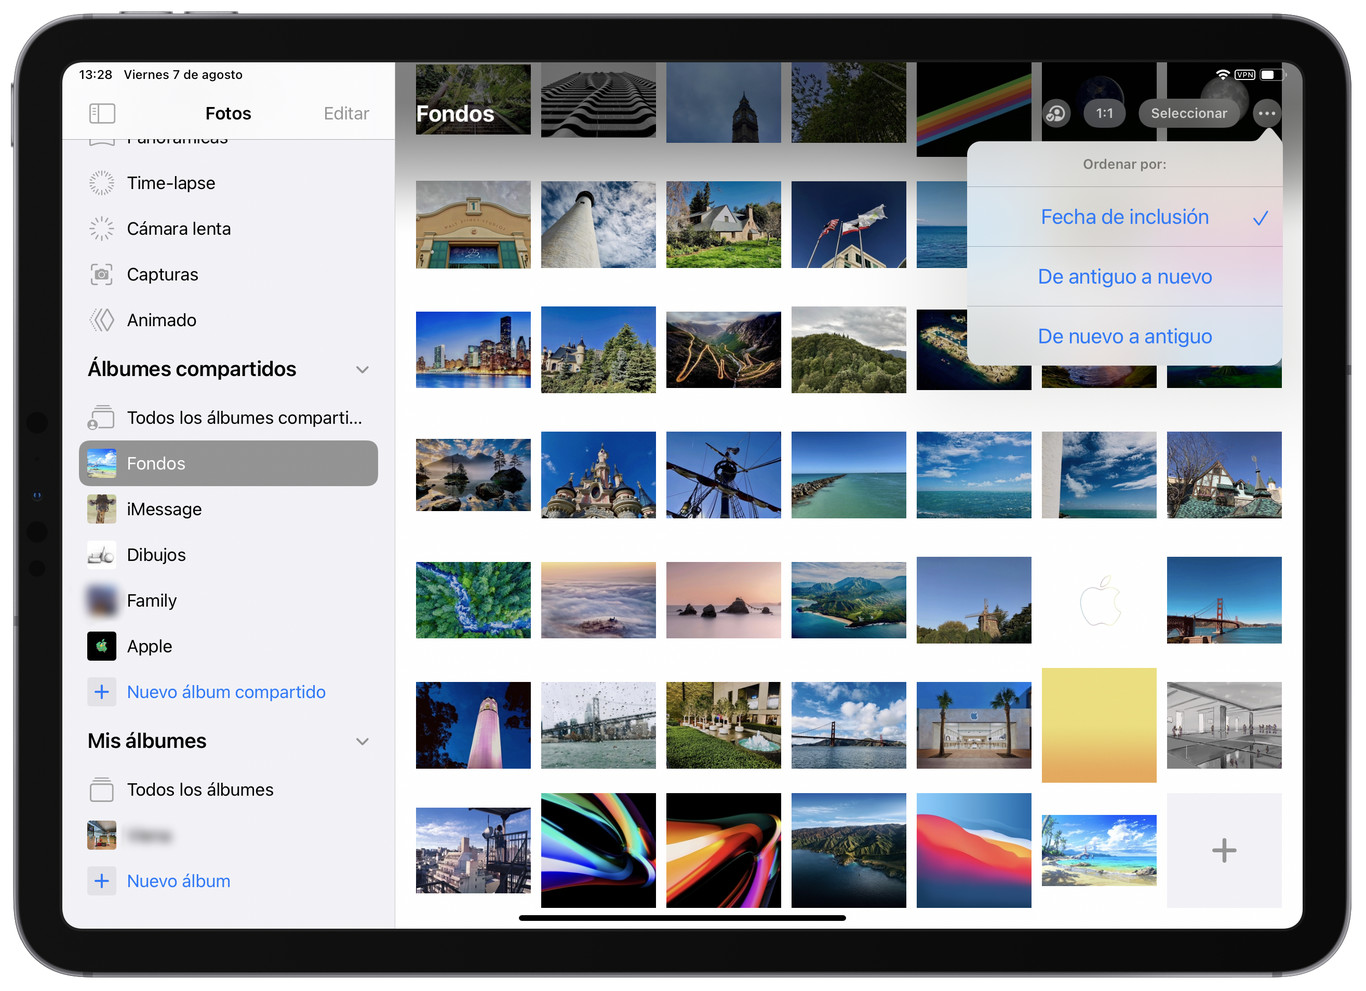 Así podemos reordenar elementos en la app Fotos usando iOS 14 y iPadOS 14